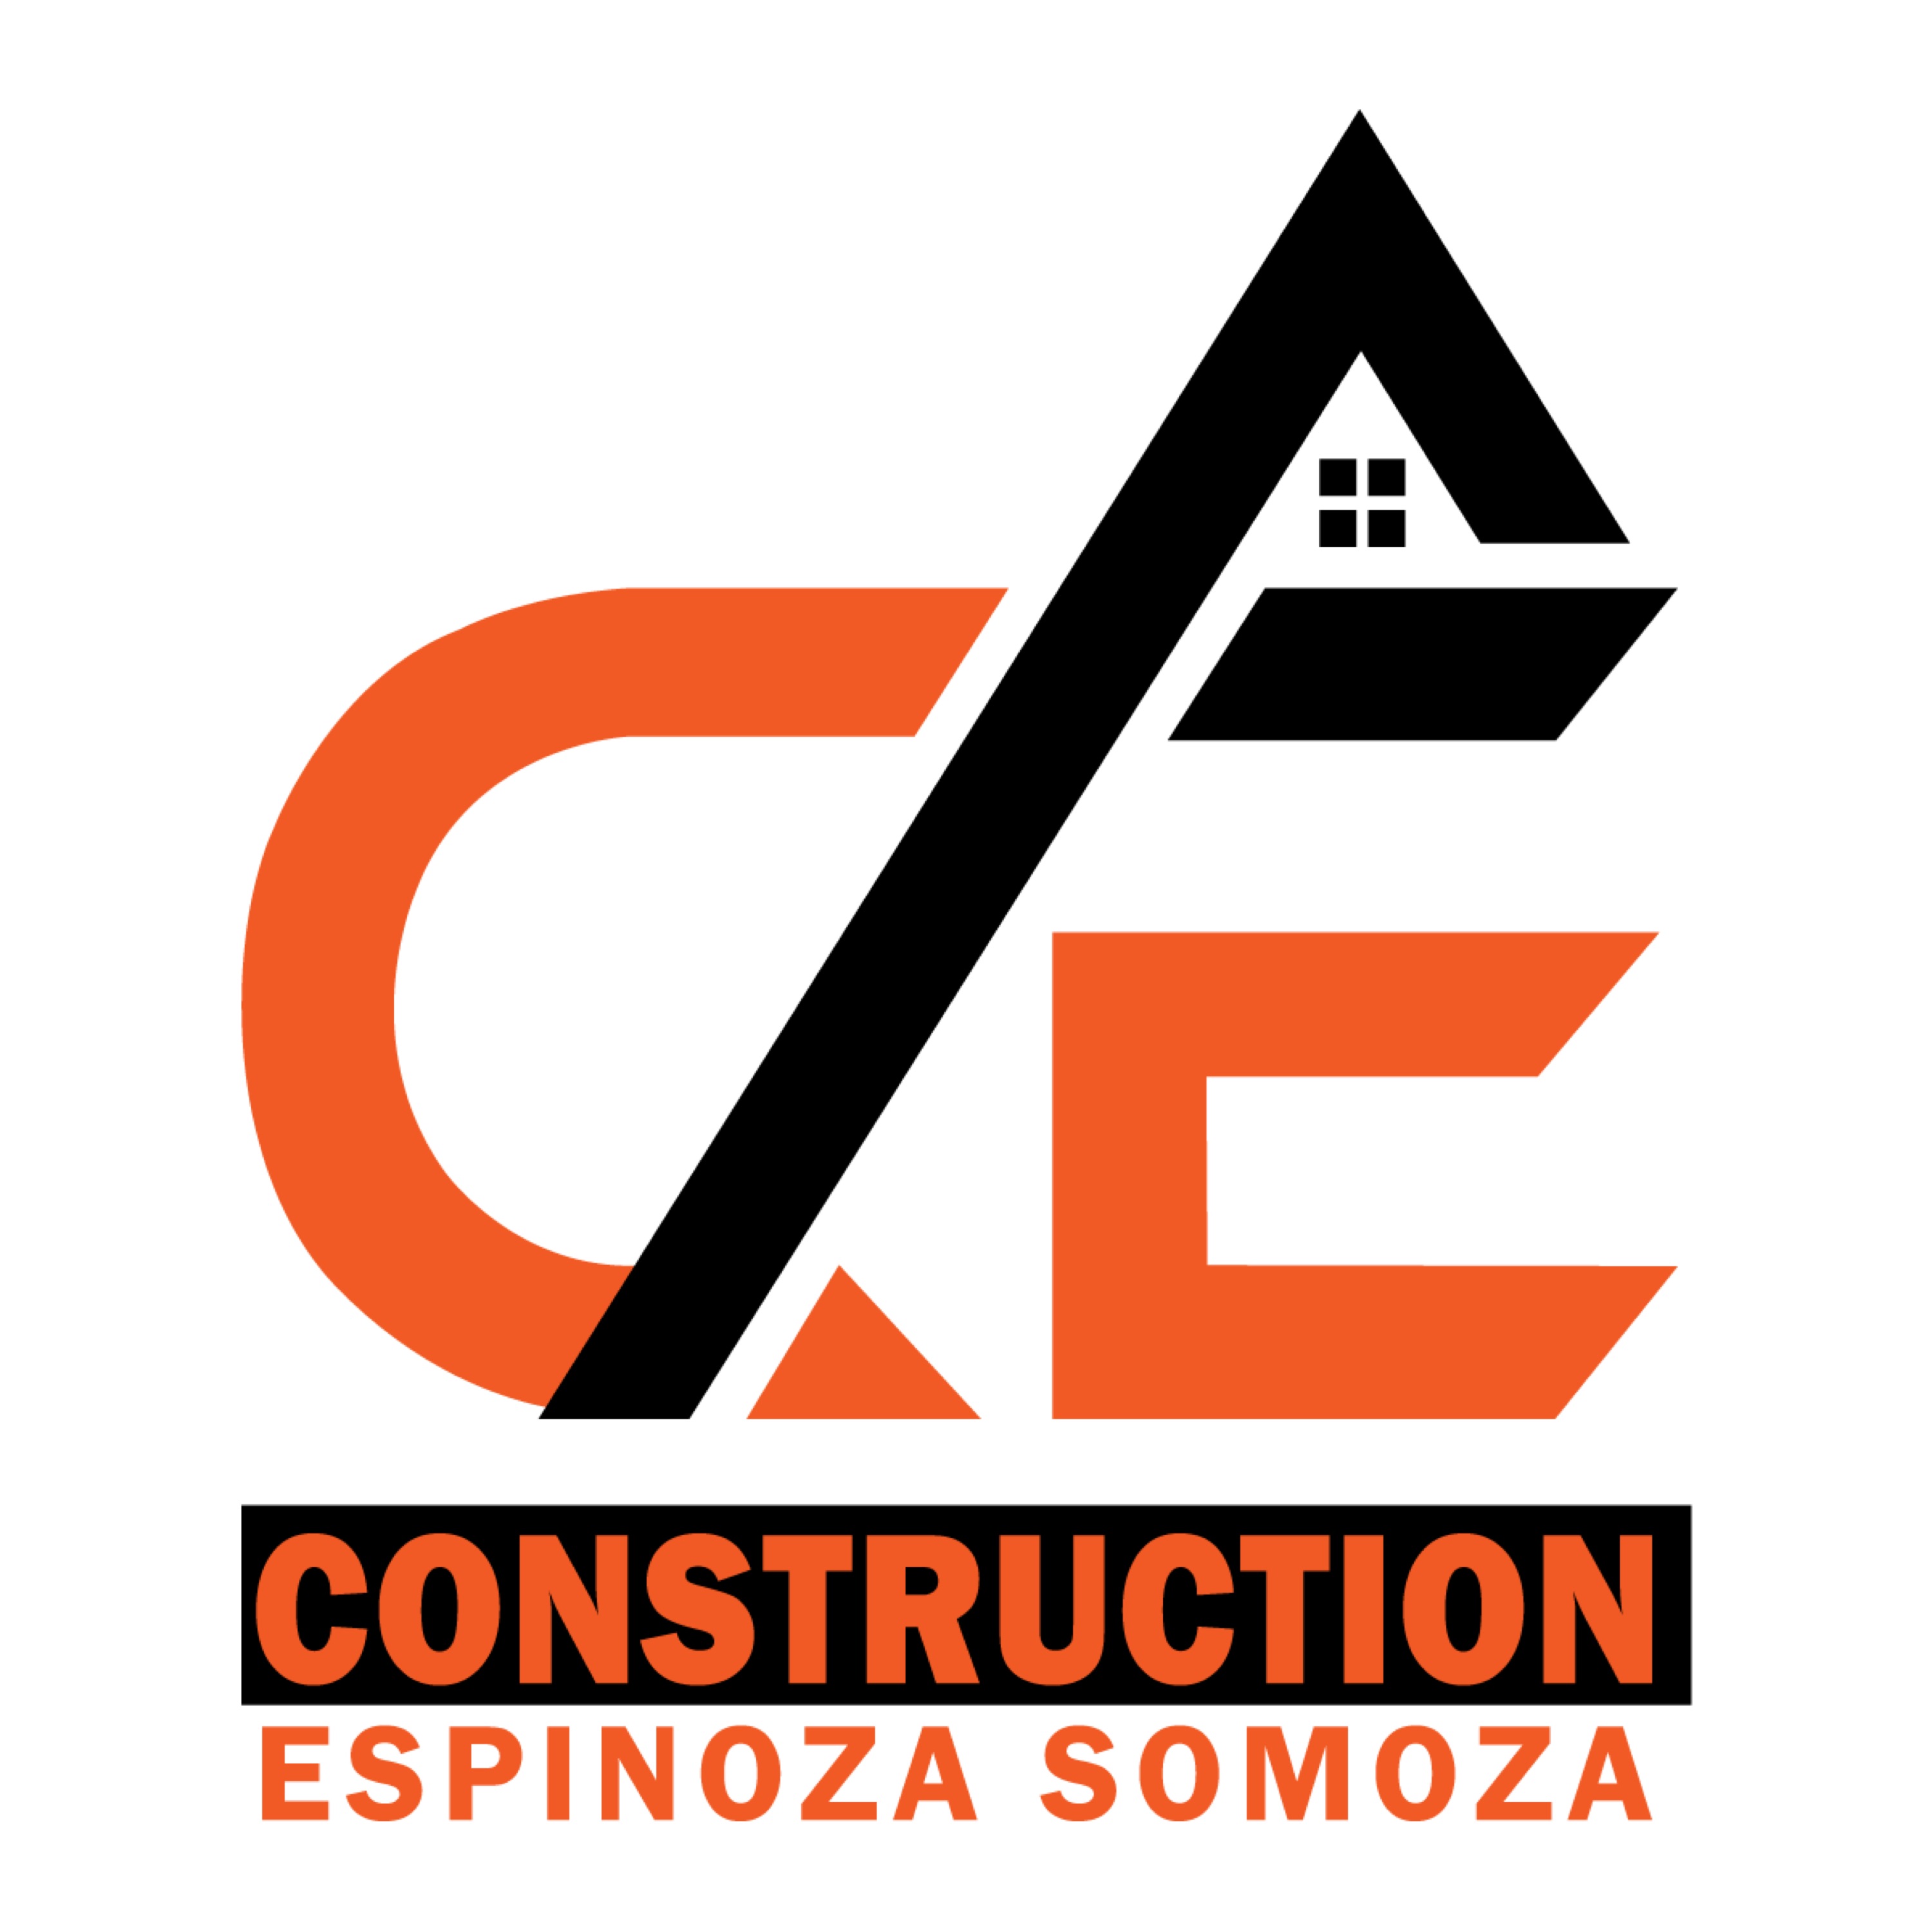 Construction Espinoza Somoza, LLC Logo